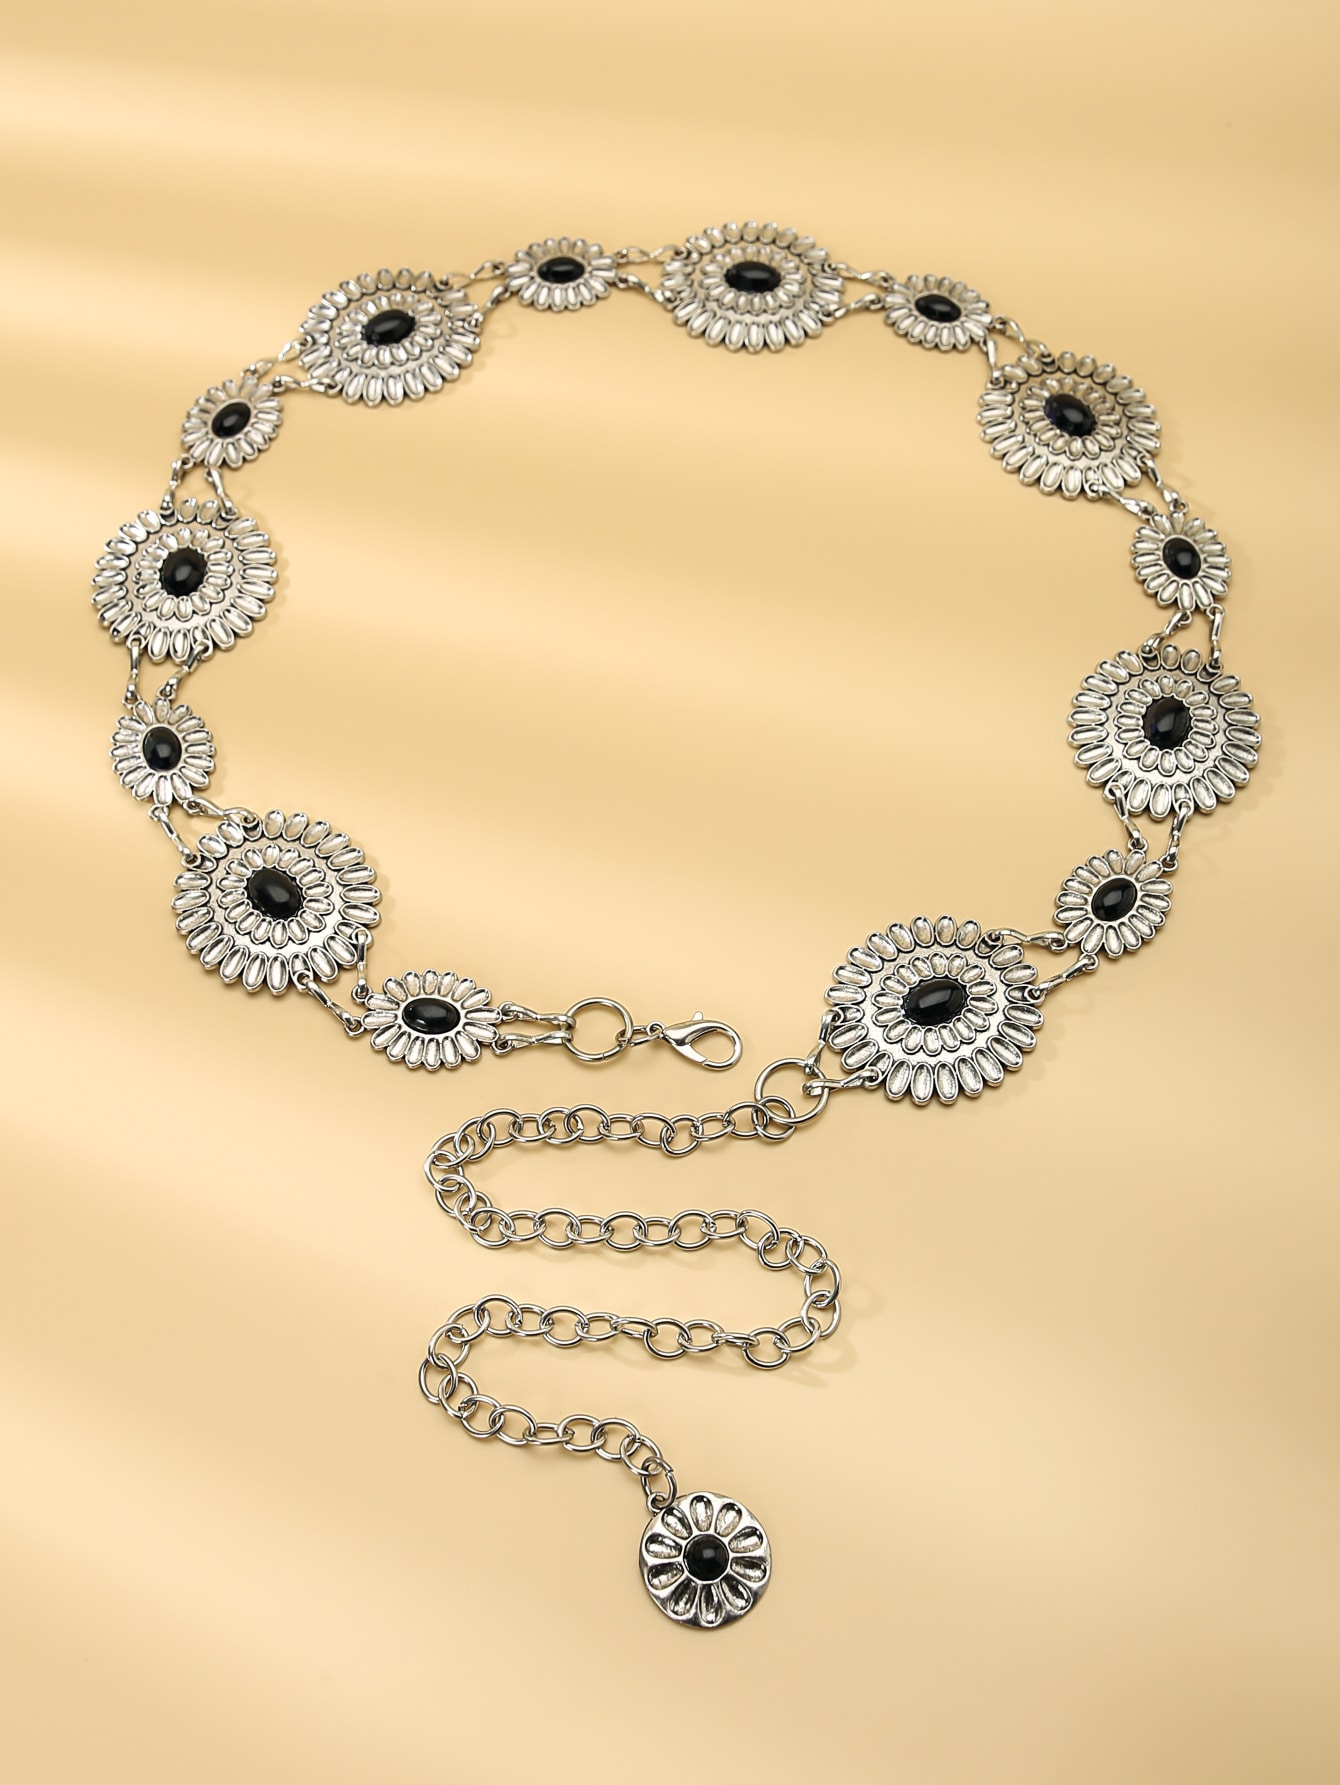 1шт женский богемный бирюзовый и цветочный декор пояс-цепочка для украшения платья в стиле бохо, серебро